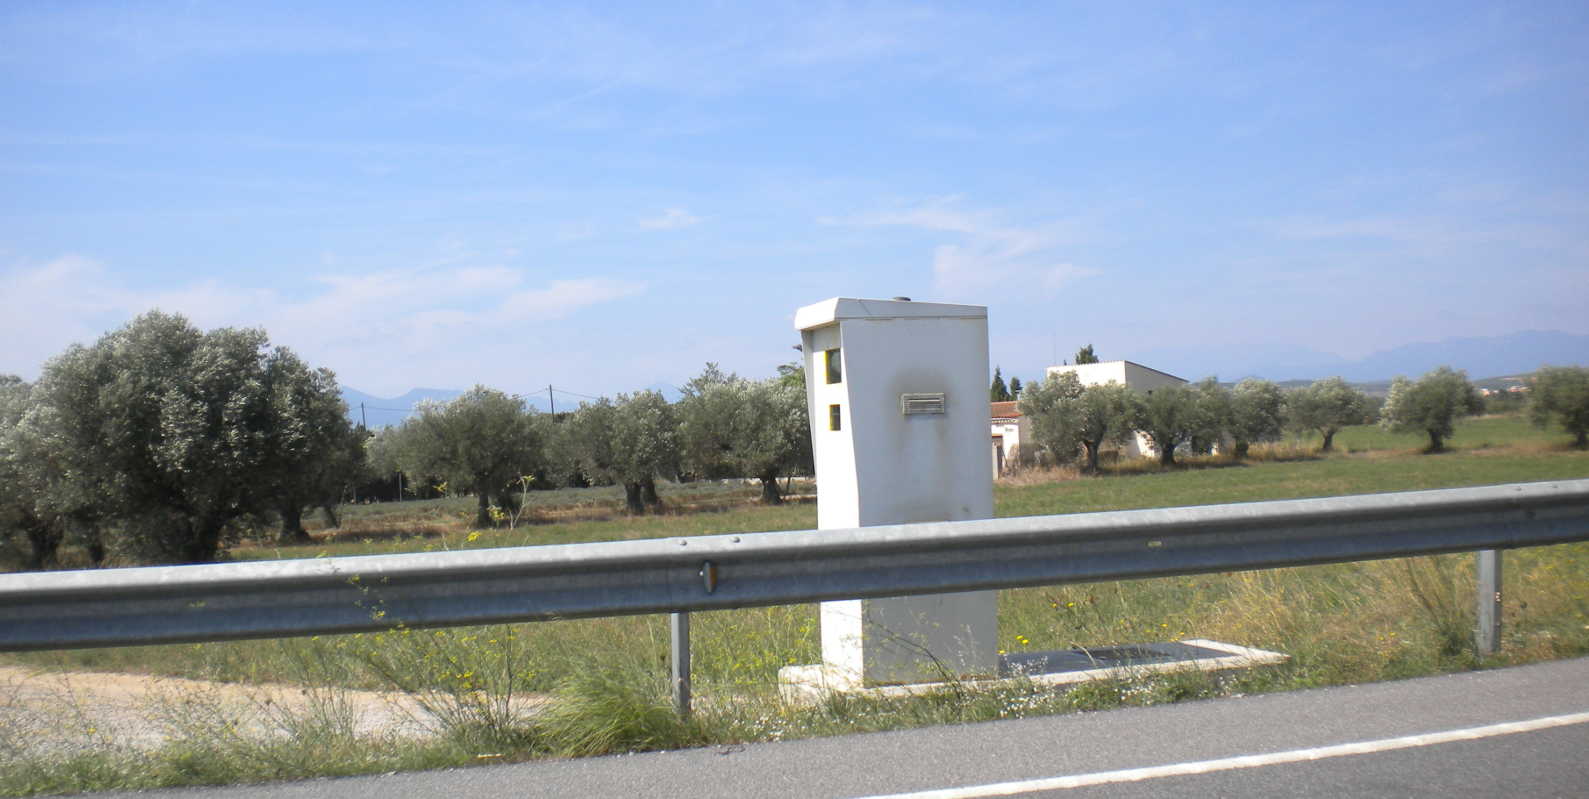 Los radares catalanes están mal señalizados (Foto: Alex / Wikimedia Commons)